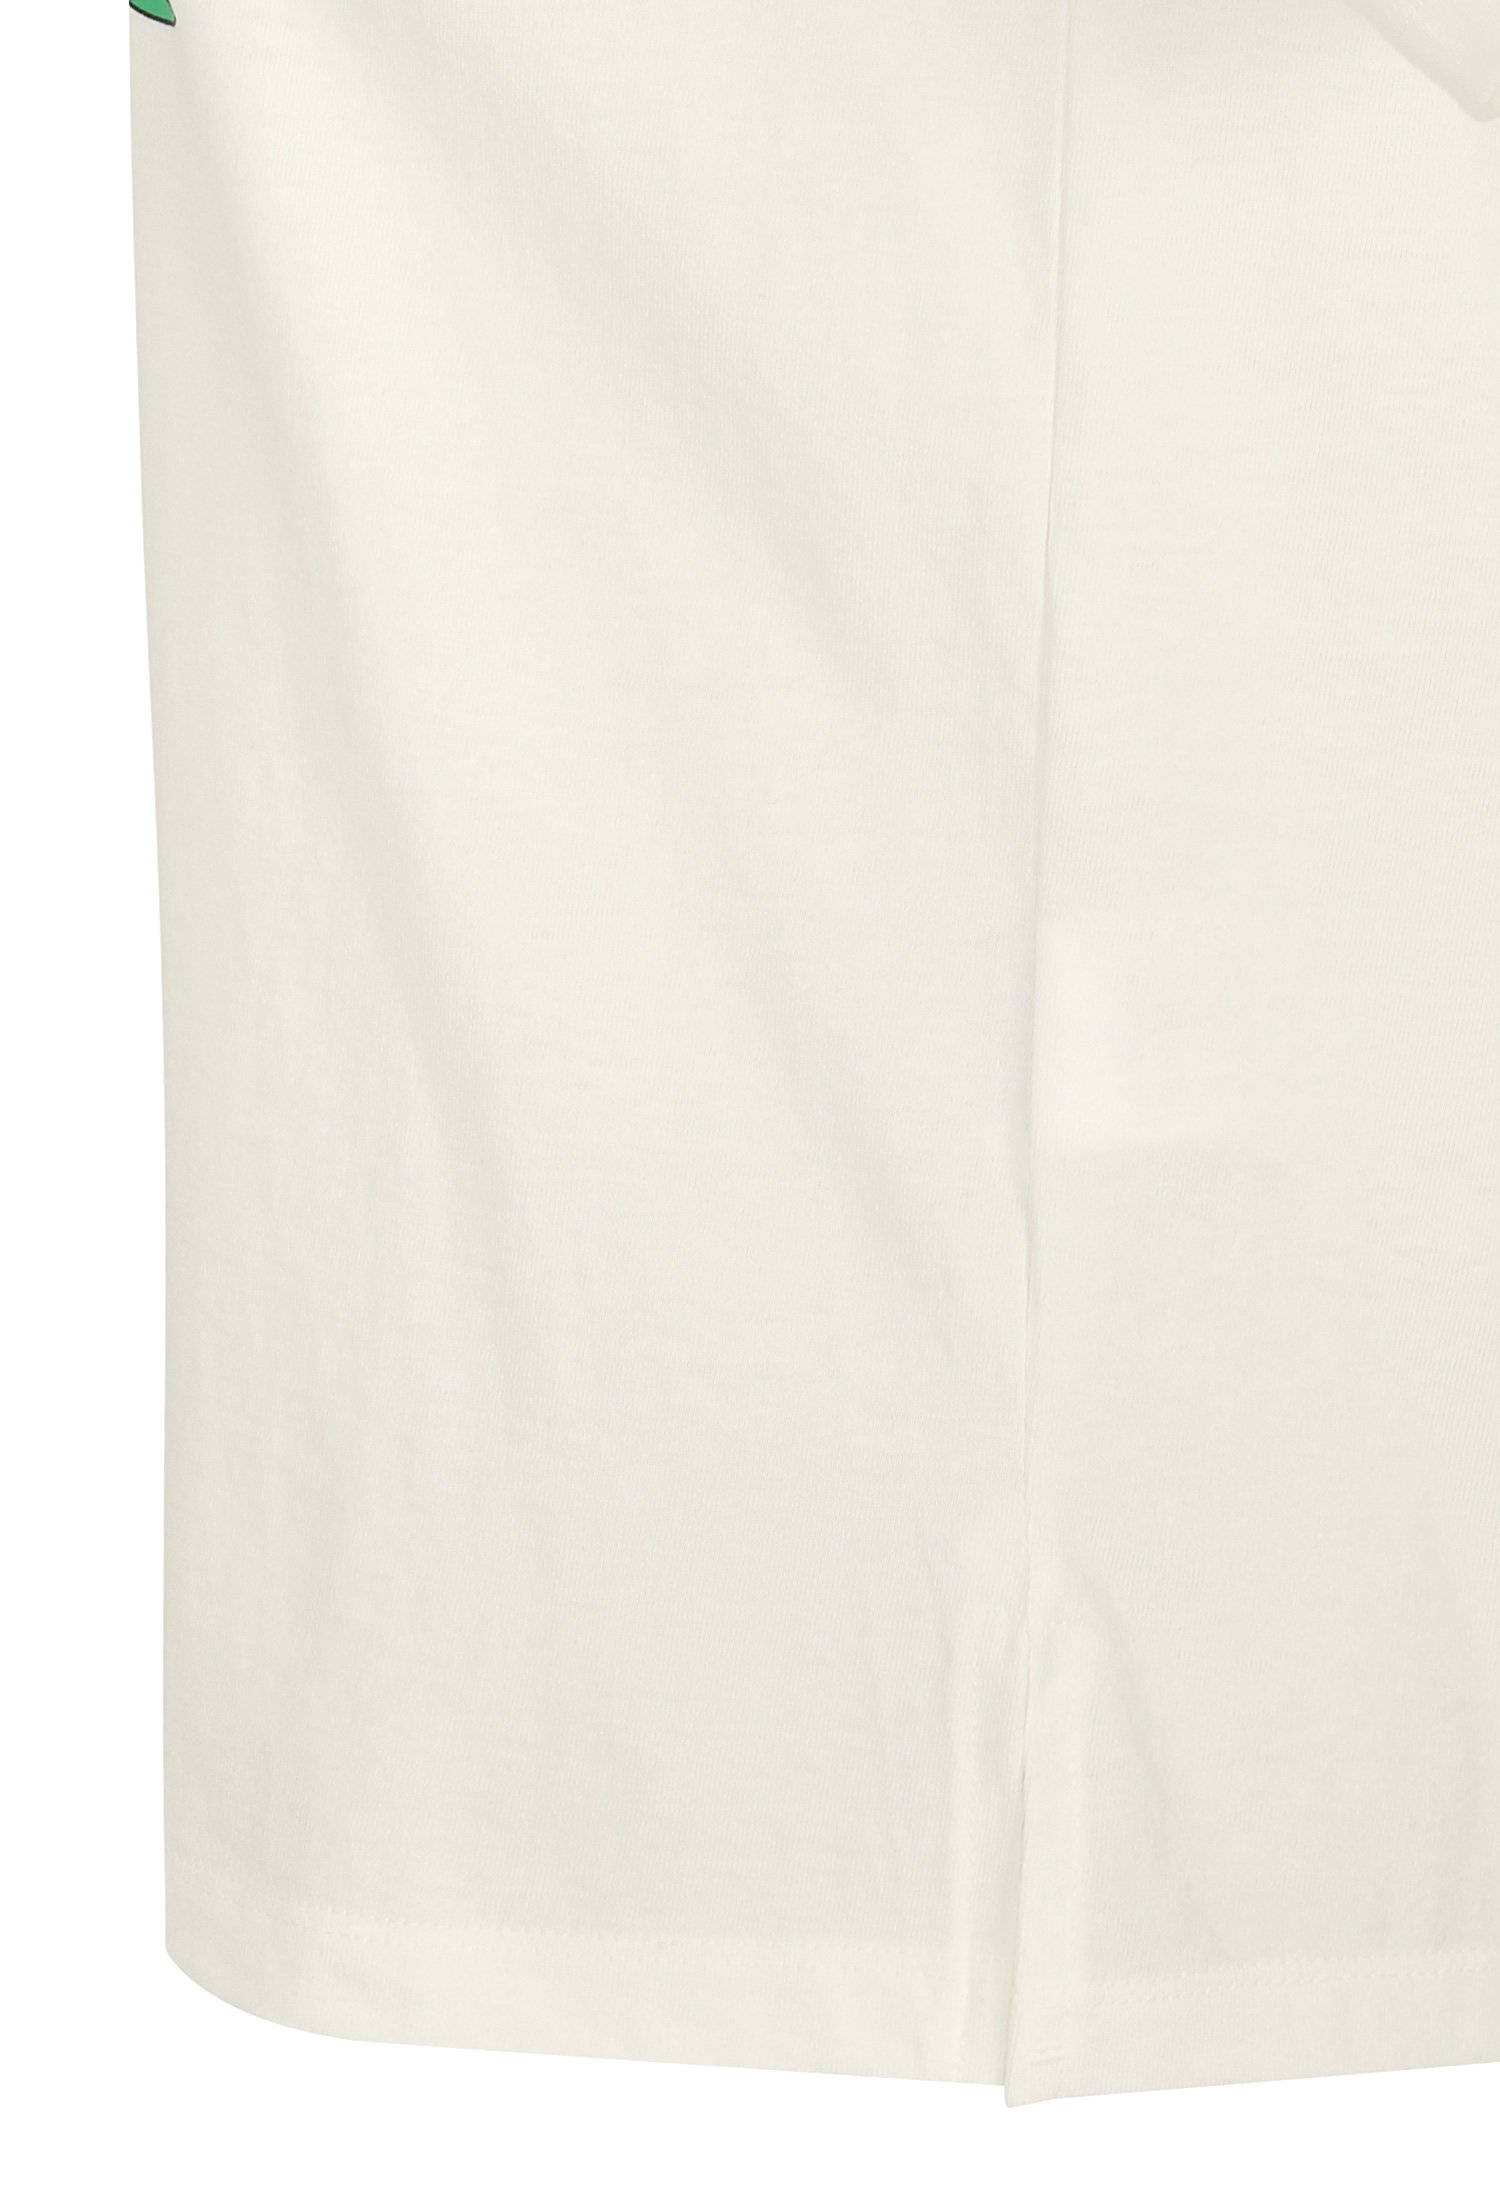 네크 배색 프린트 티셔츠 (WHITE)